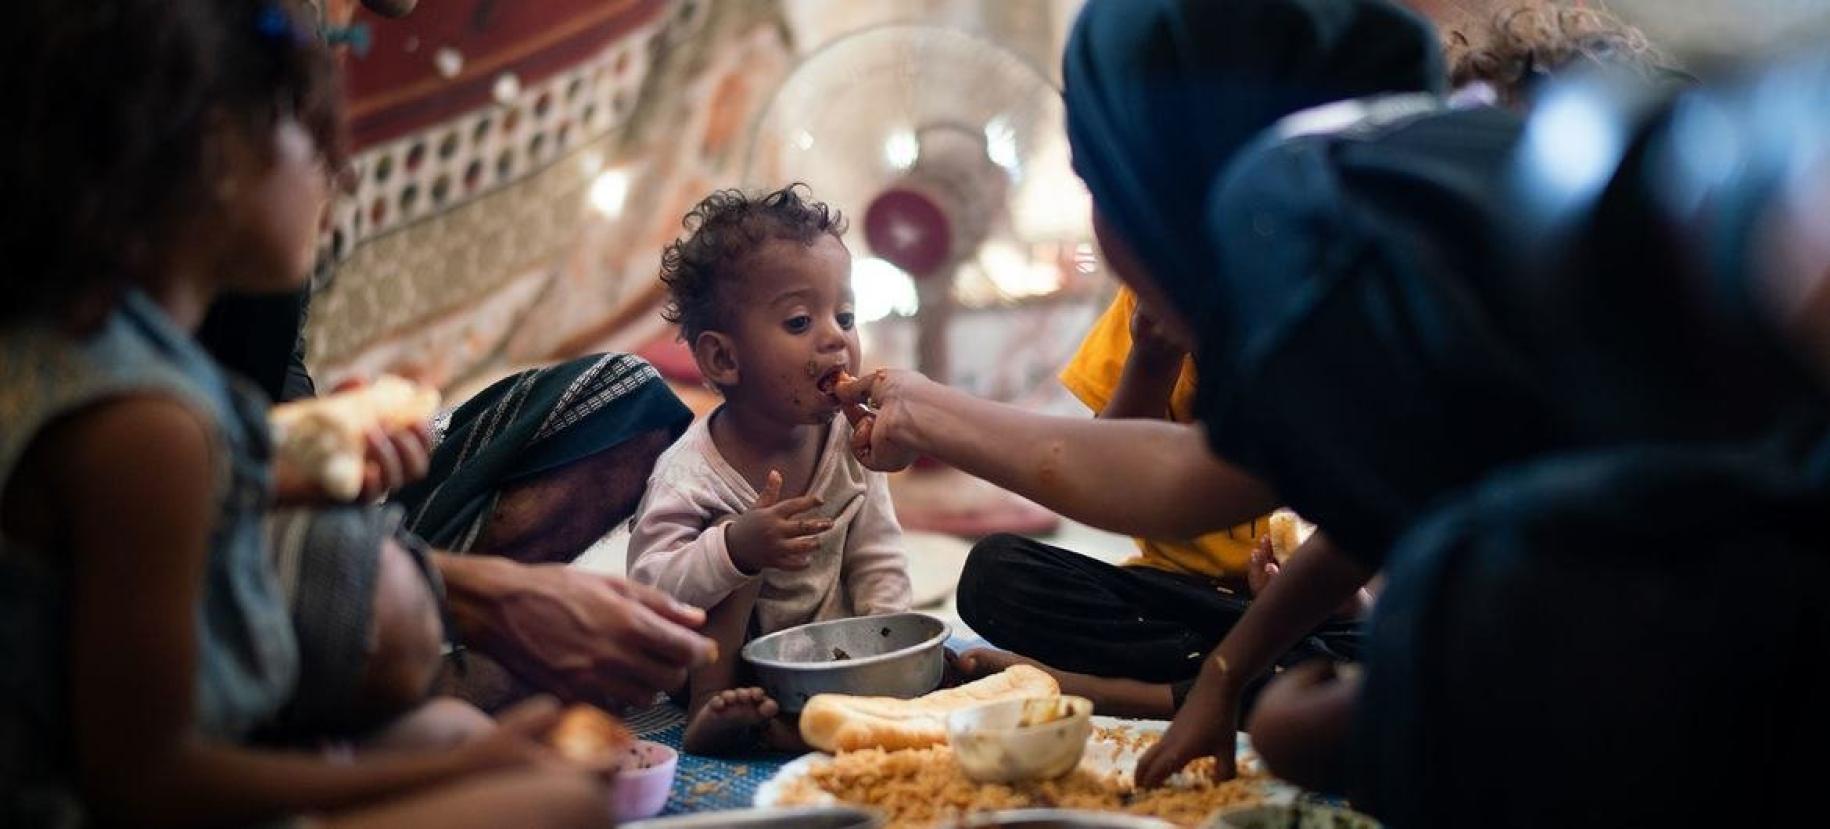 Un niño de un año come con su familia en un campamento de desplazados internos en Adén, Yemen.